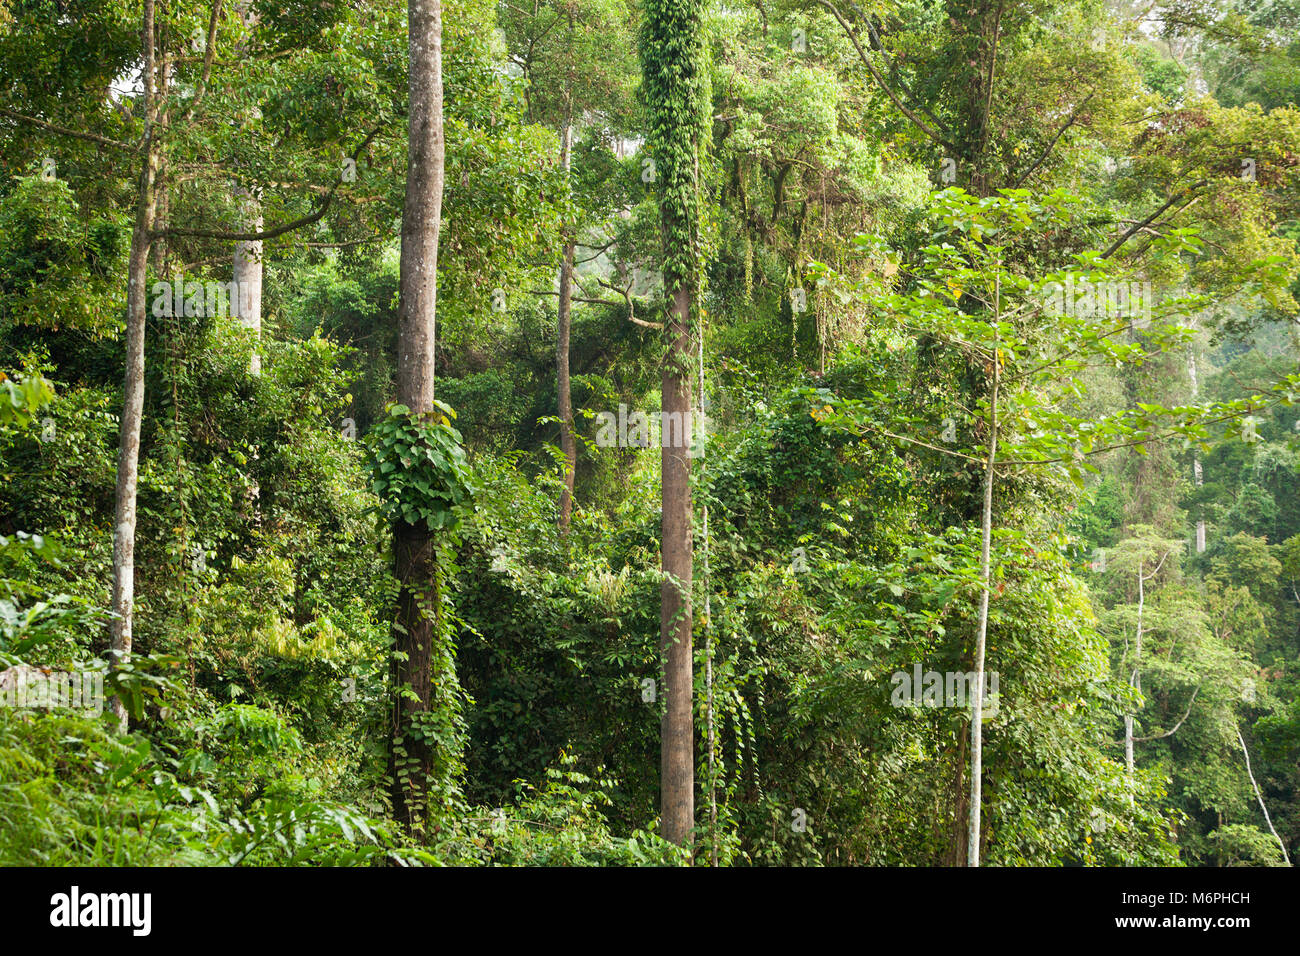 Ecosistema tropical de bosques pluviales de dipterocarpio de tierras bajas en el área de conservación del valle de Danum, Sabah, Borneo Foto de stock